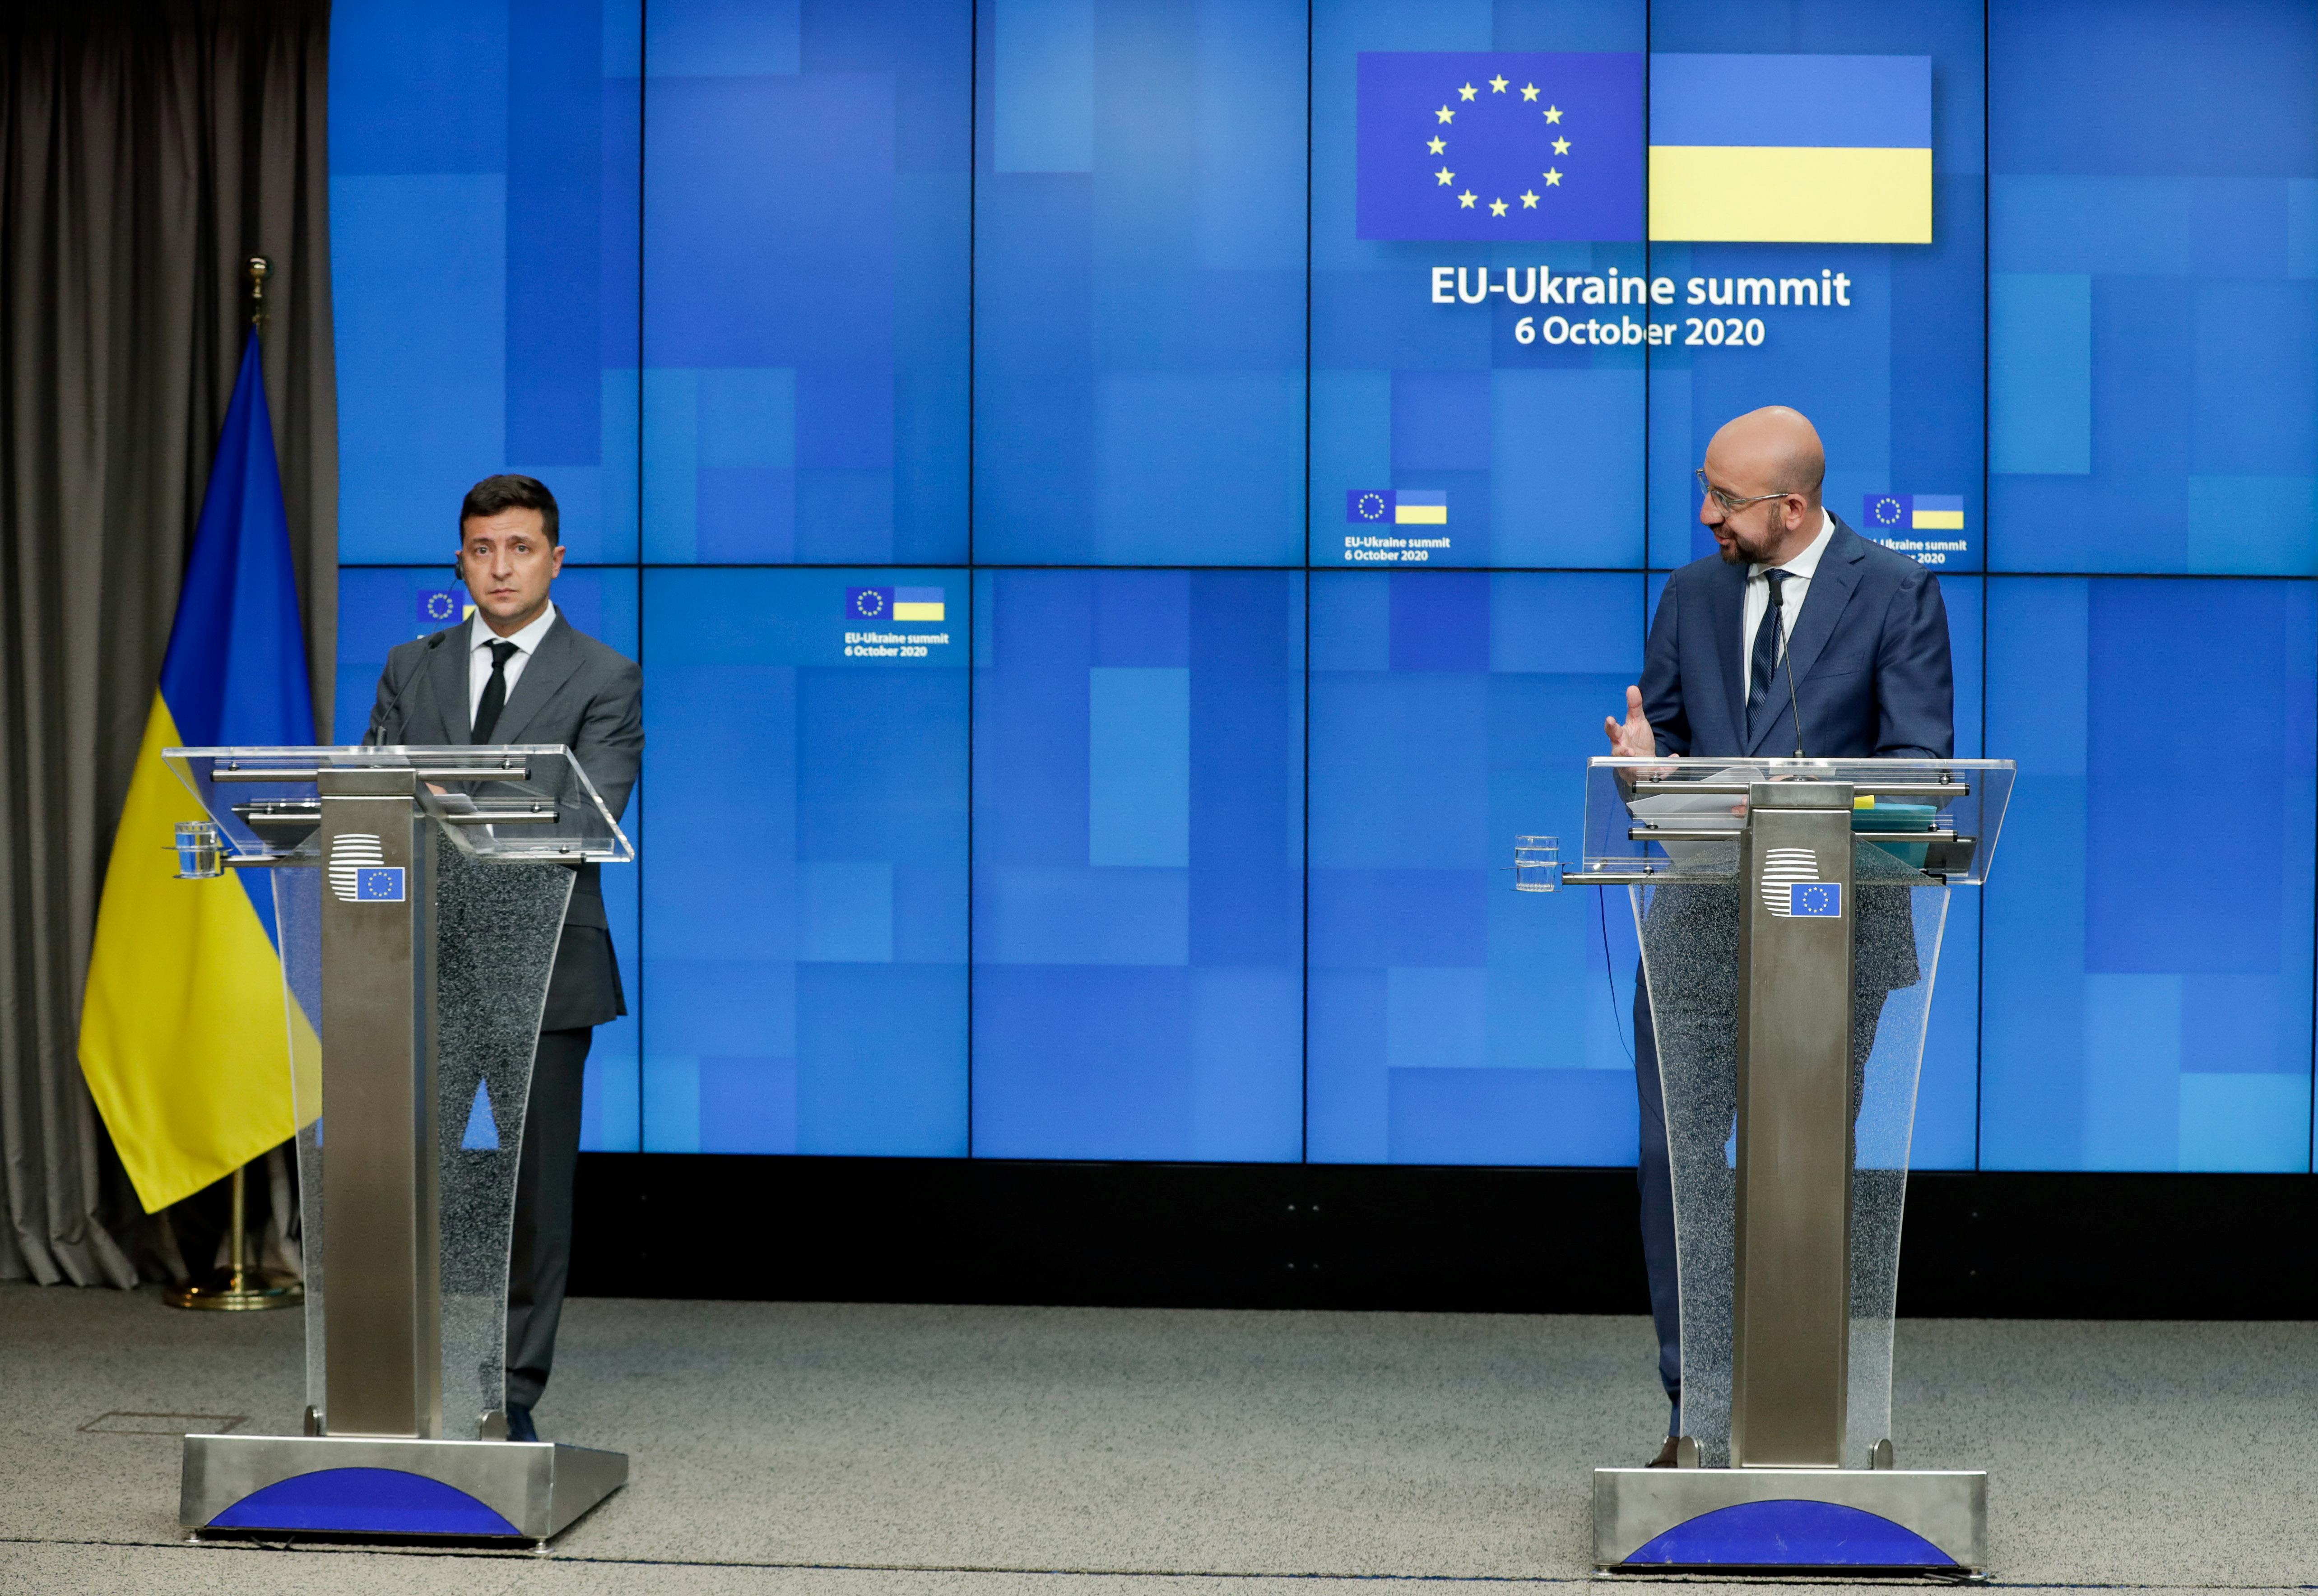 EU-Ukraine summit in Brussels